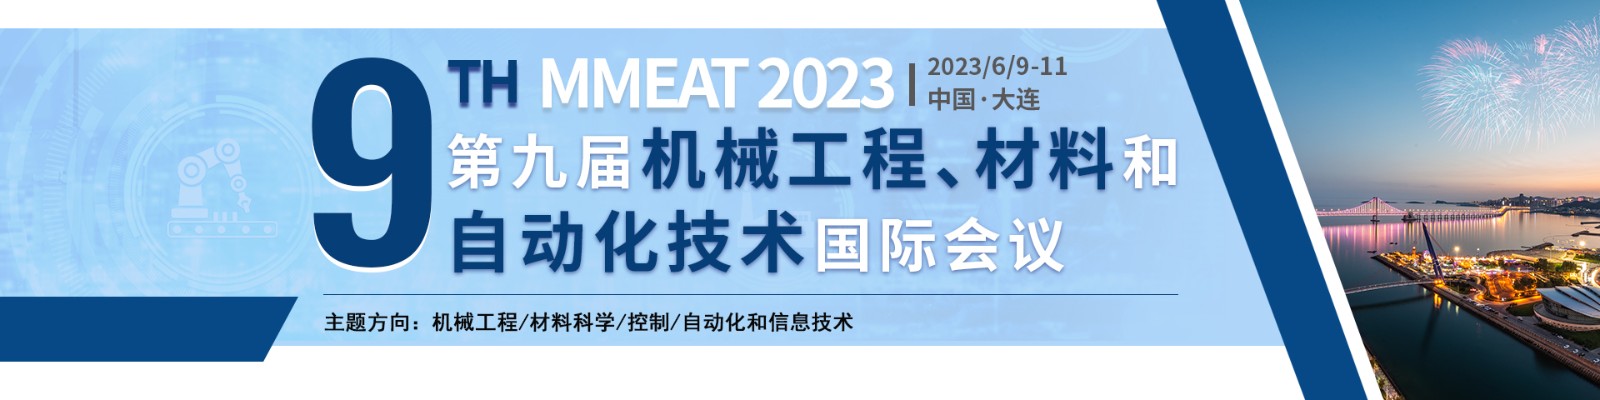 2023年6月大连站-MMEAT-会议banner.jpg